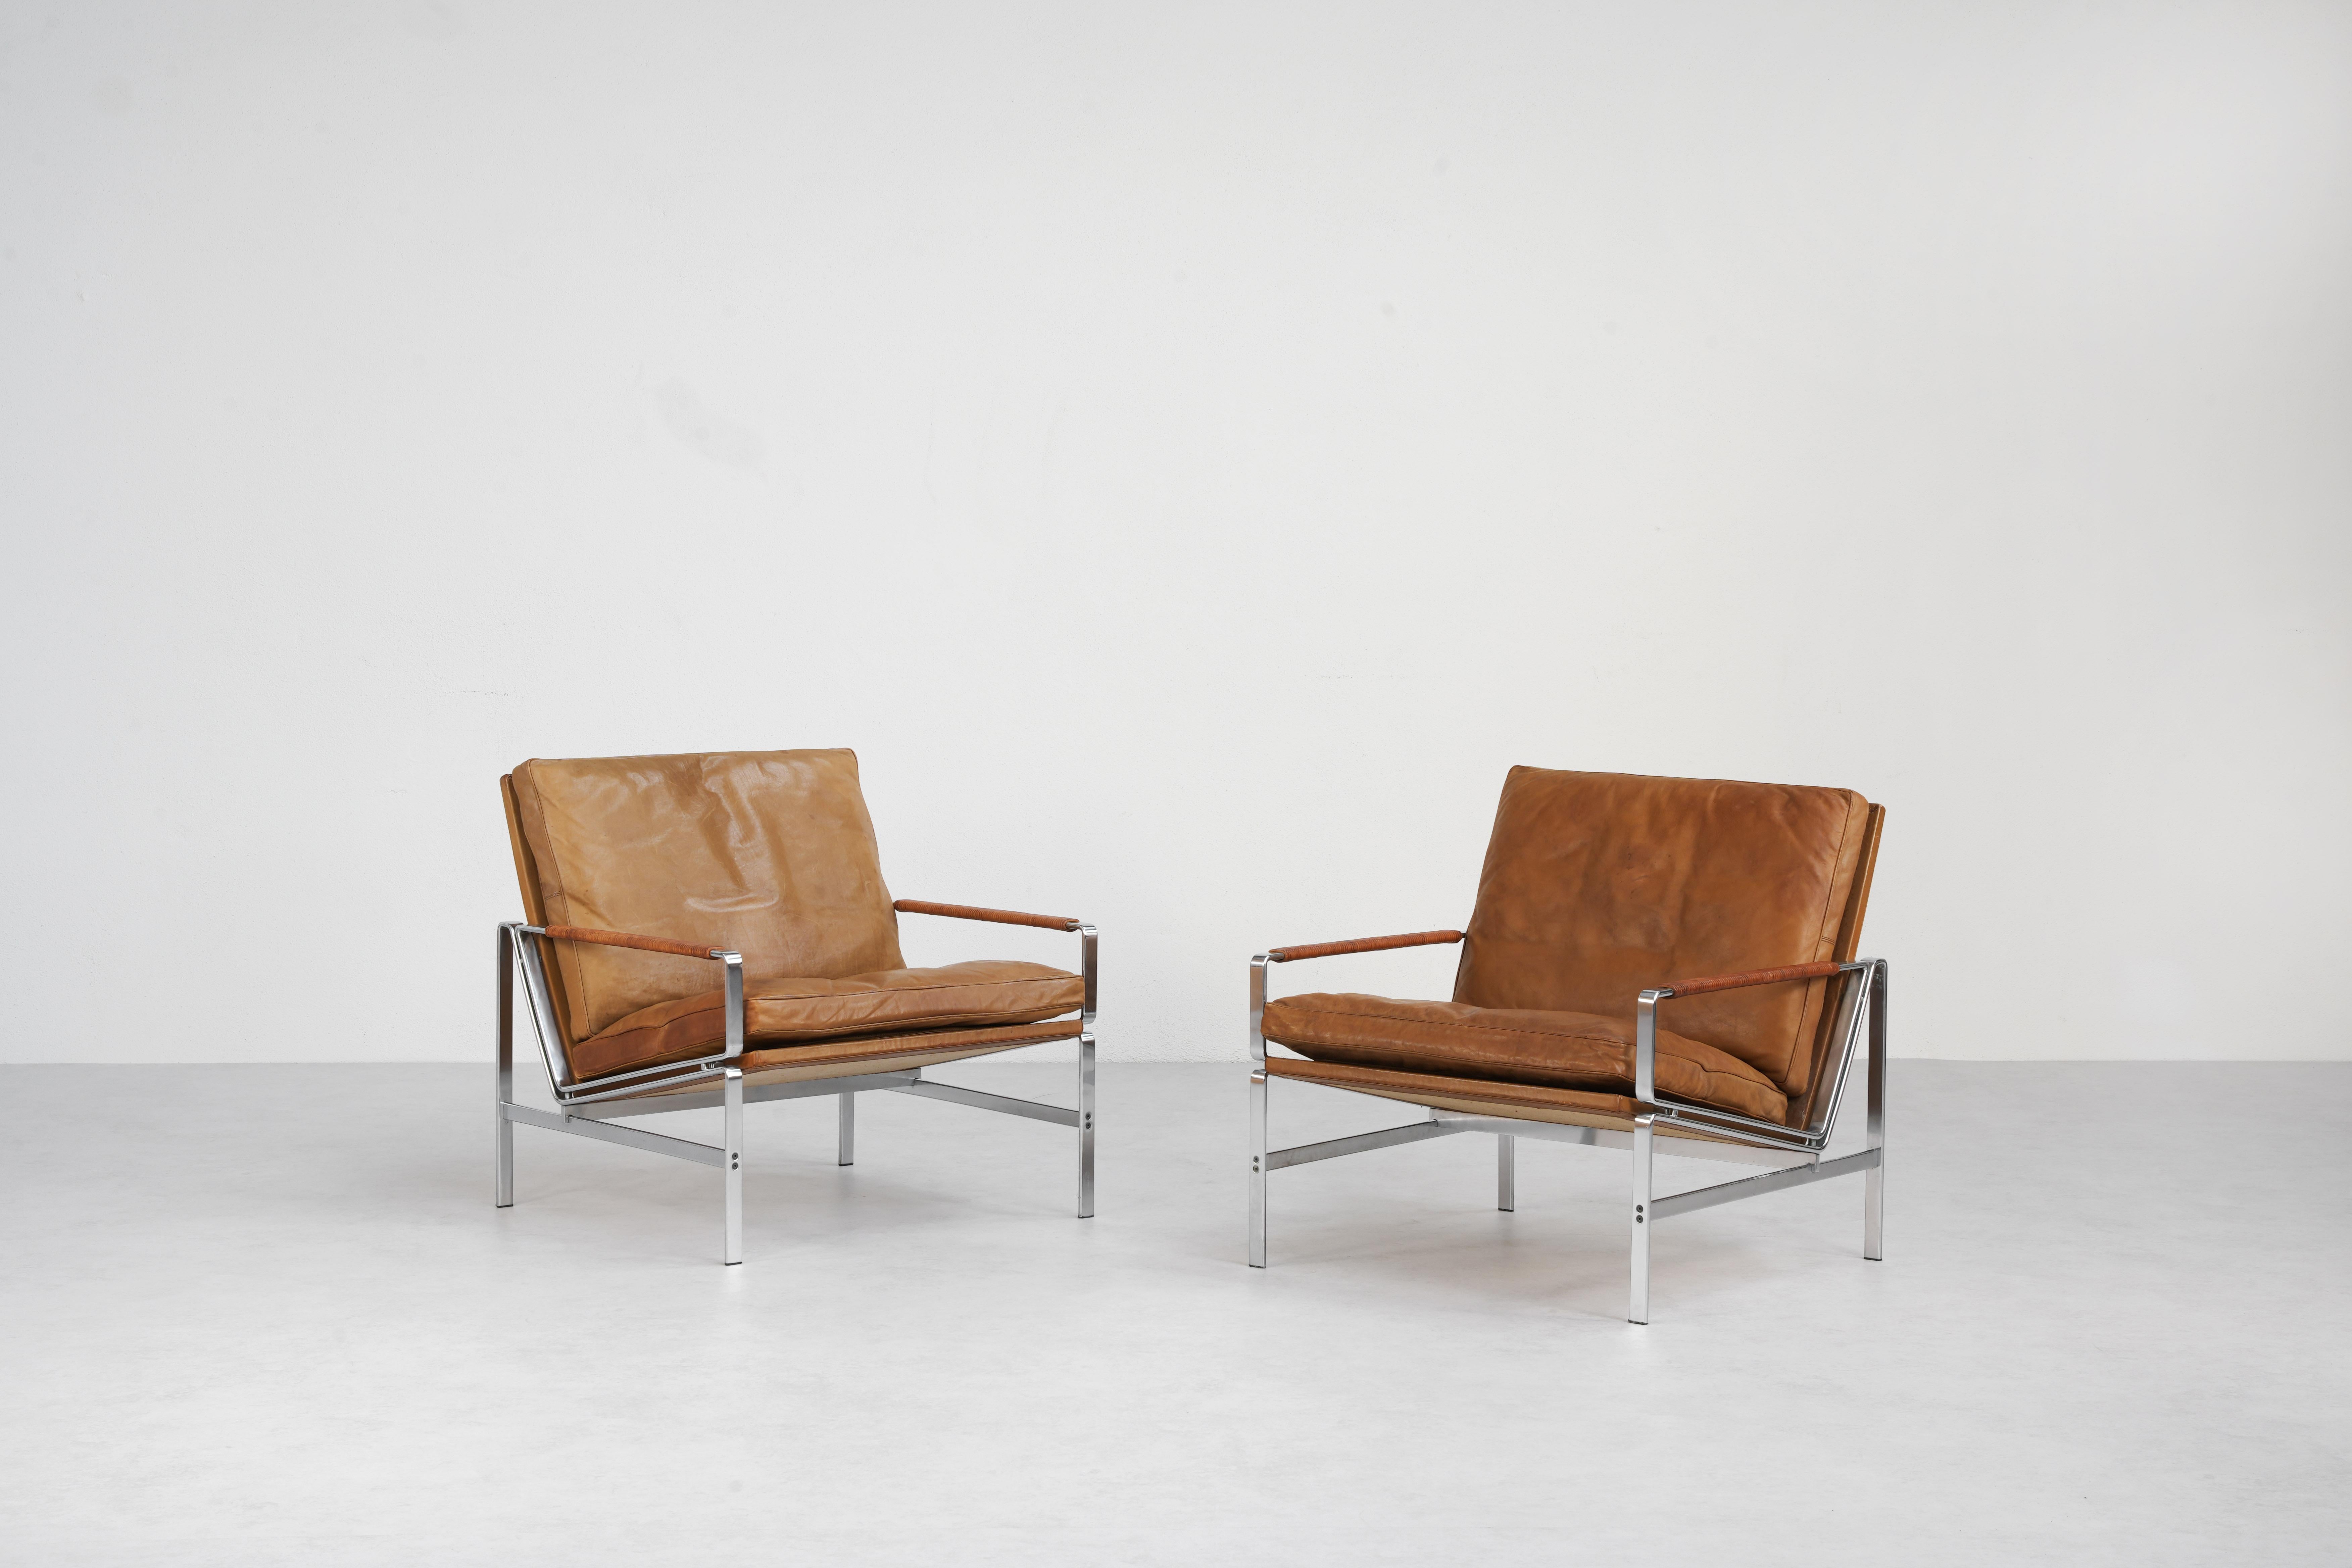 Une belle paire de chaises longues conçues par Preben Fabricius & Jørgen Kastholm et produites par Alfred Kill International, Allemagne 1968. 
Conçues avec l'élégance moderne du milieu du siècle, ces chaises allient sans effort forme et fonction.